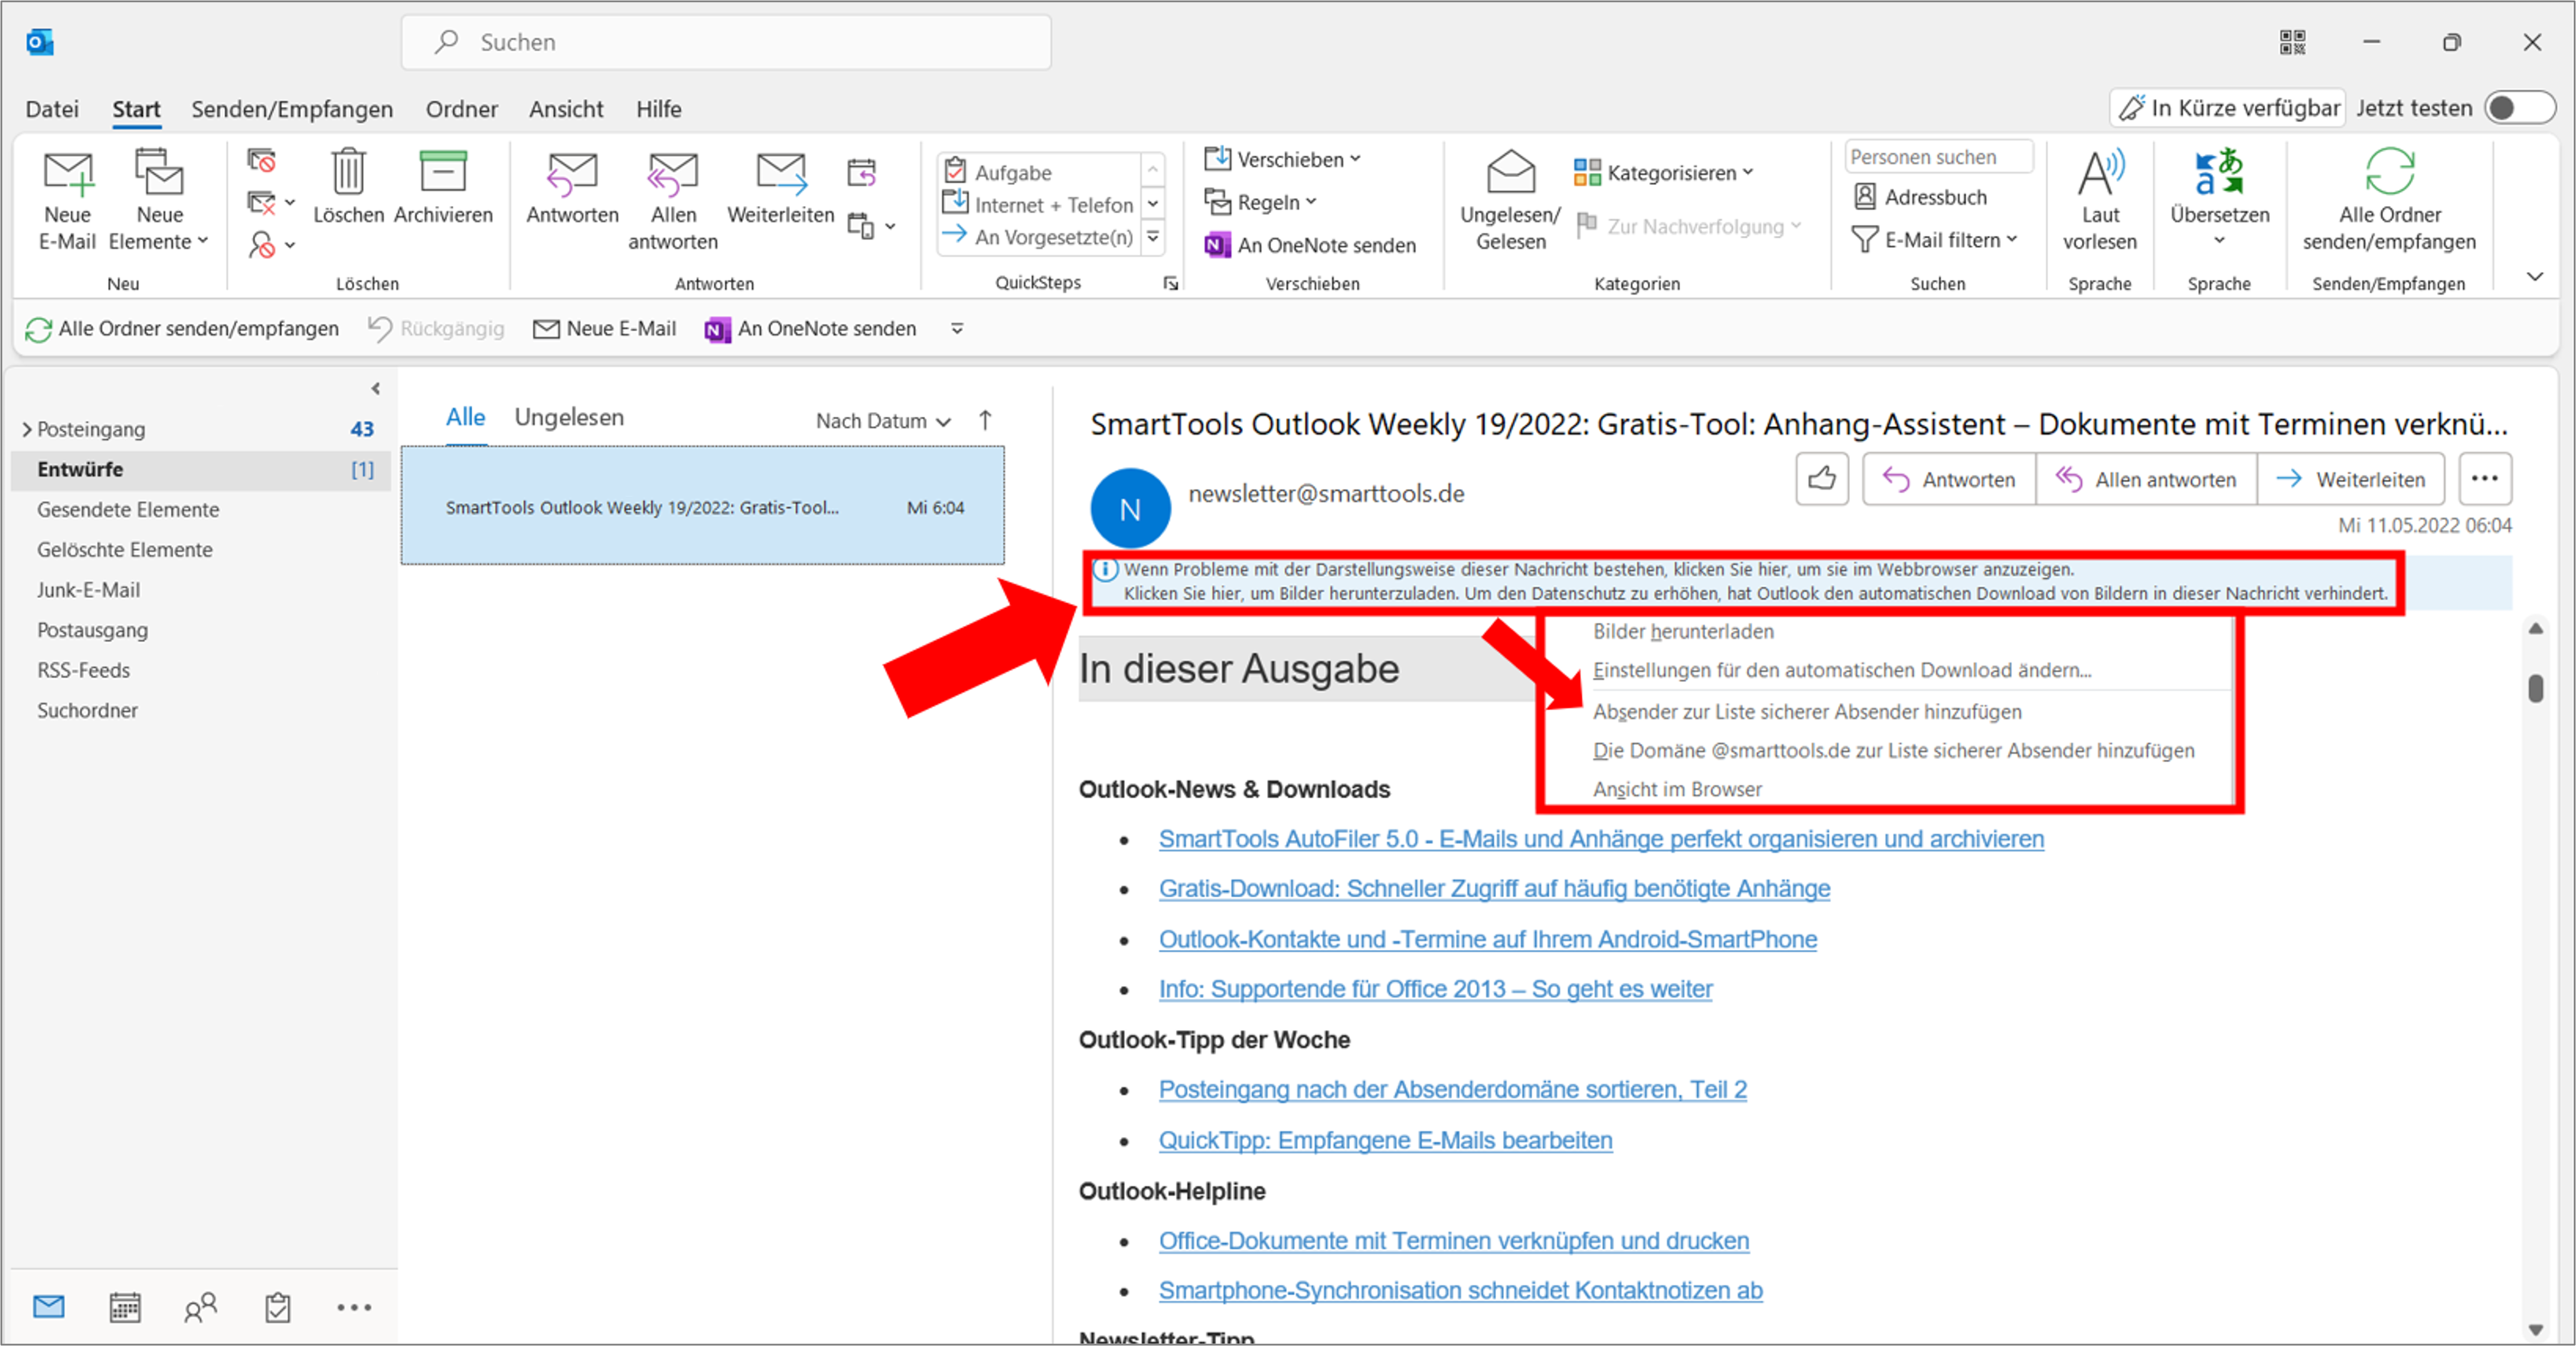 Outlook bietet verschiedene Möglichkeiten für das automatische Herunterladen von Bildern in E-Mails an. Am sichersten geht das über das Hinzufügen des Absenders zu einer Whitelist. Bild: Microsoft Outlook, Büro-Kaizen.